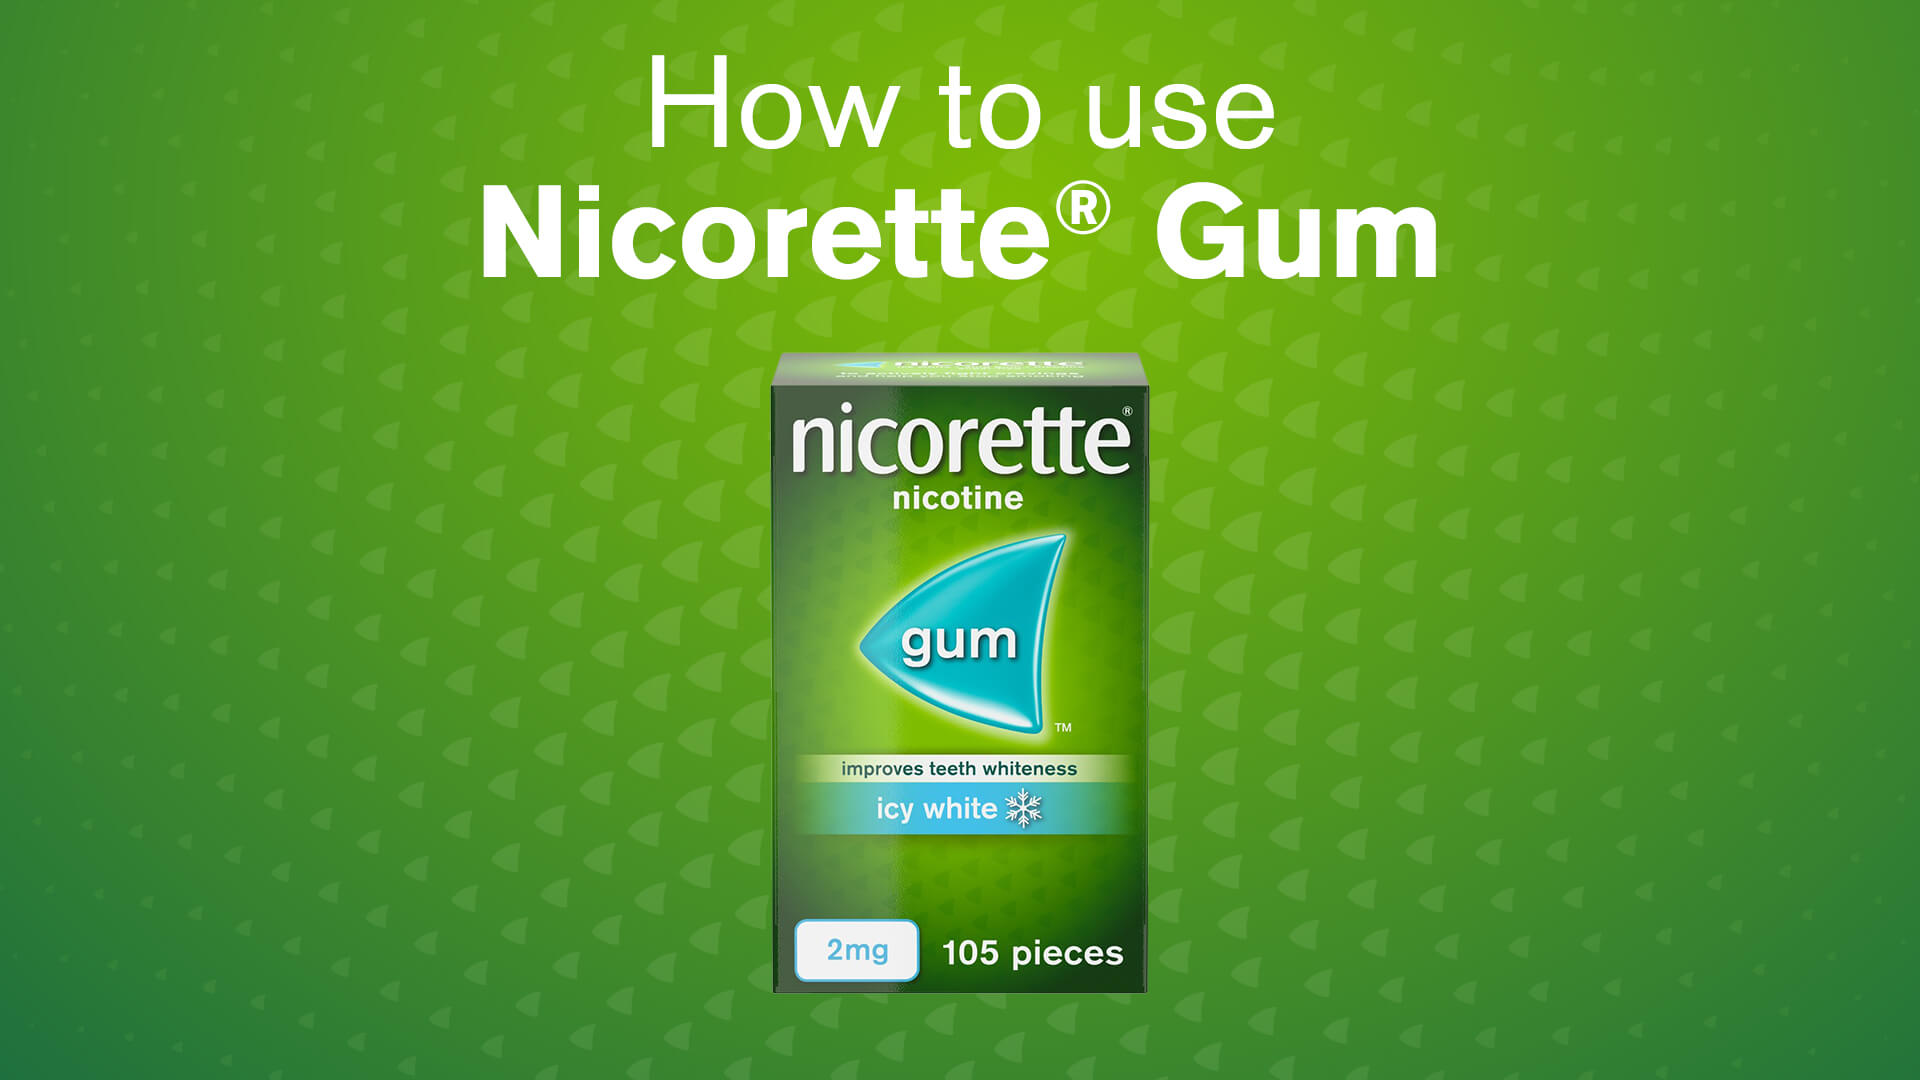 Nicorette® Gum